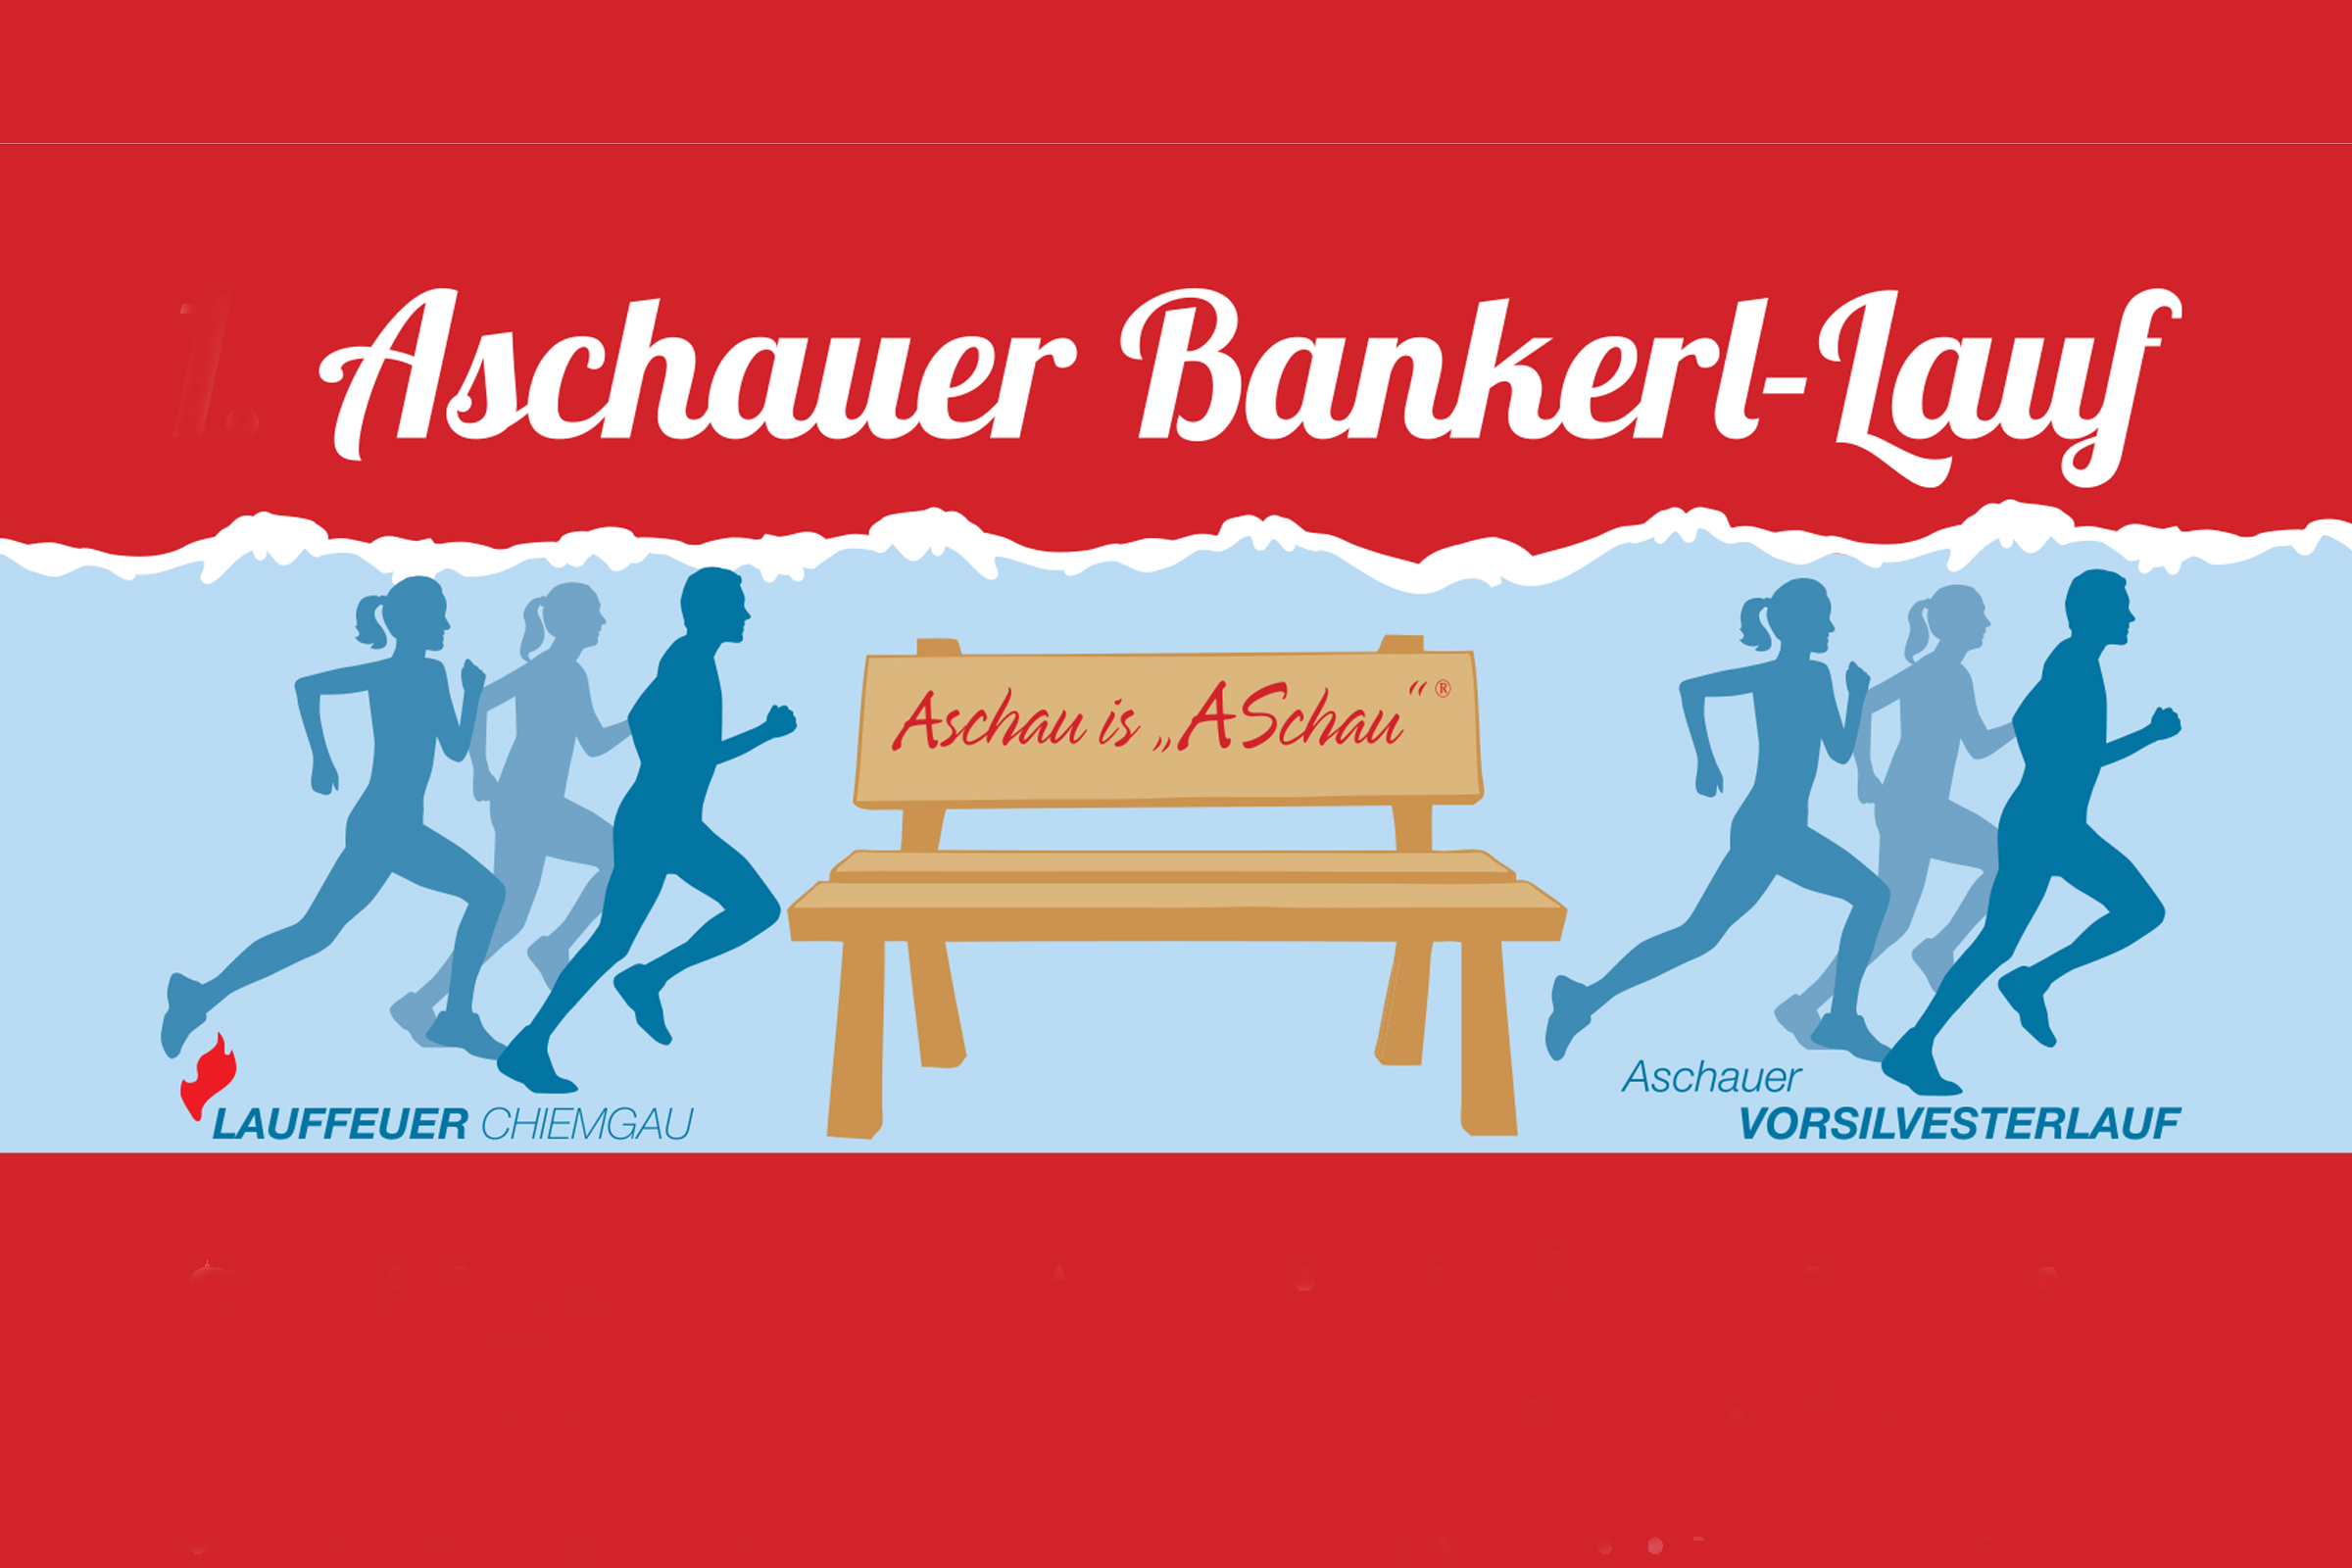 3. Aschauer Bankerl-Lauf